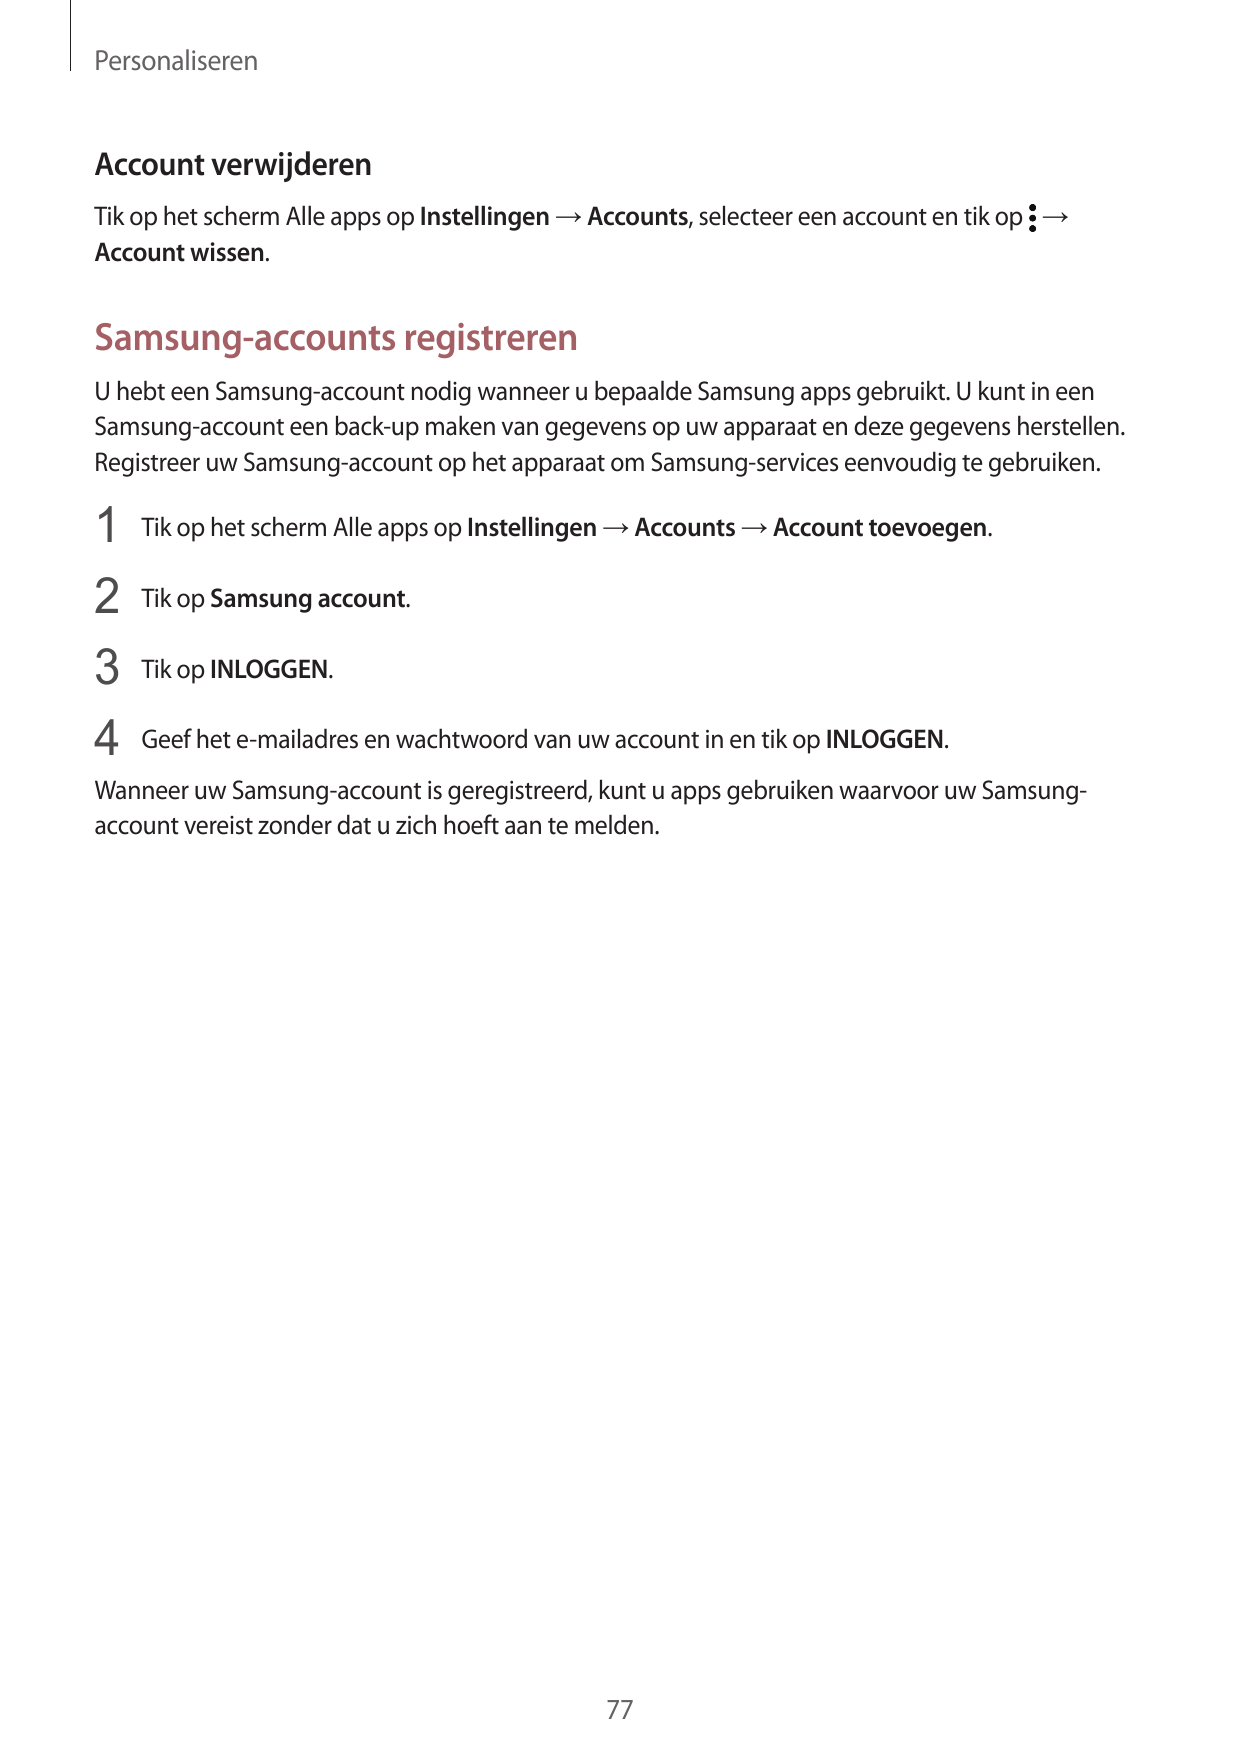 PersonaliserenAccount verwijderenTik op het scherm Alle apps op Instellingen → Accounts, selecteer een account en tik op →Accoun